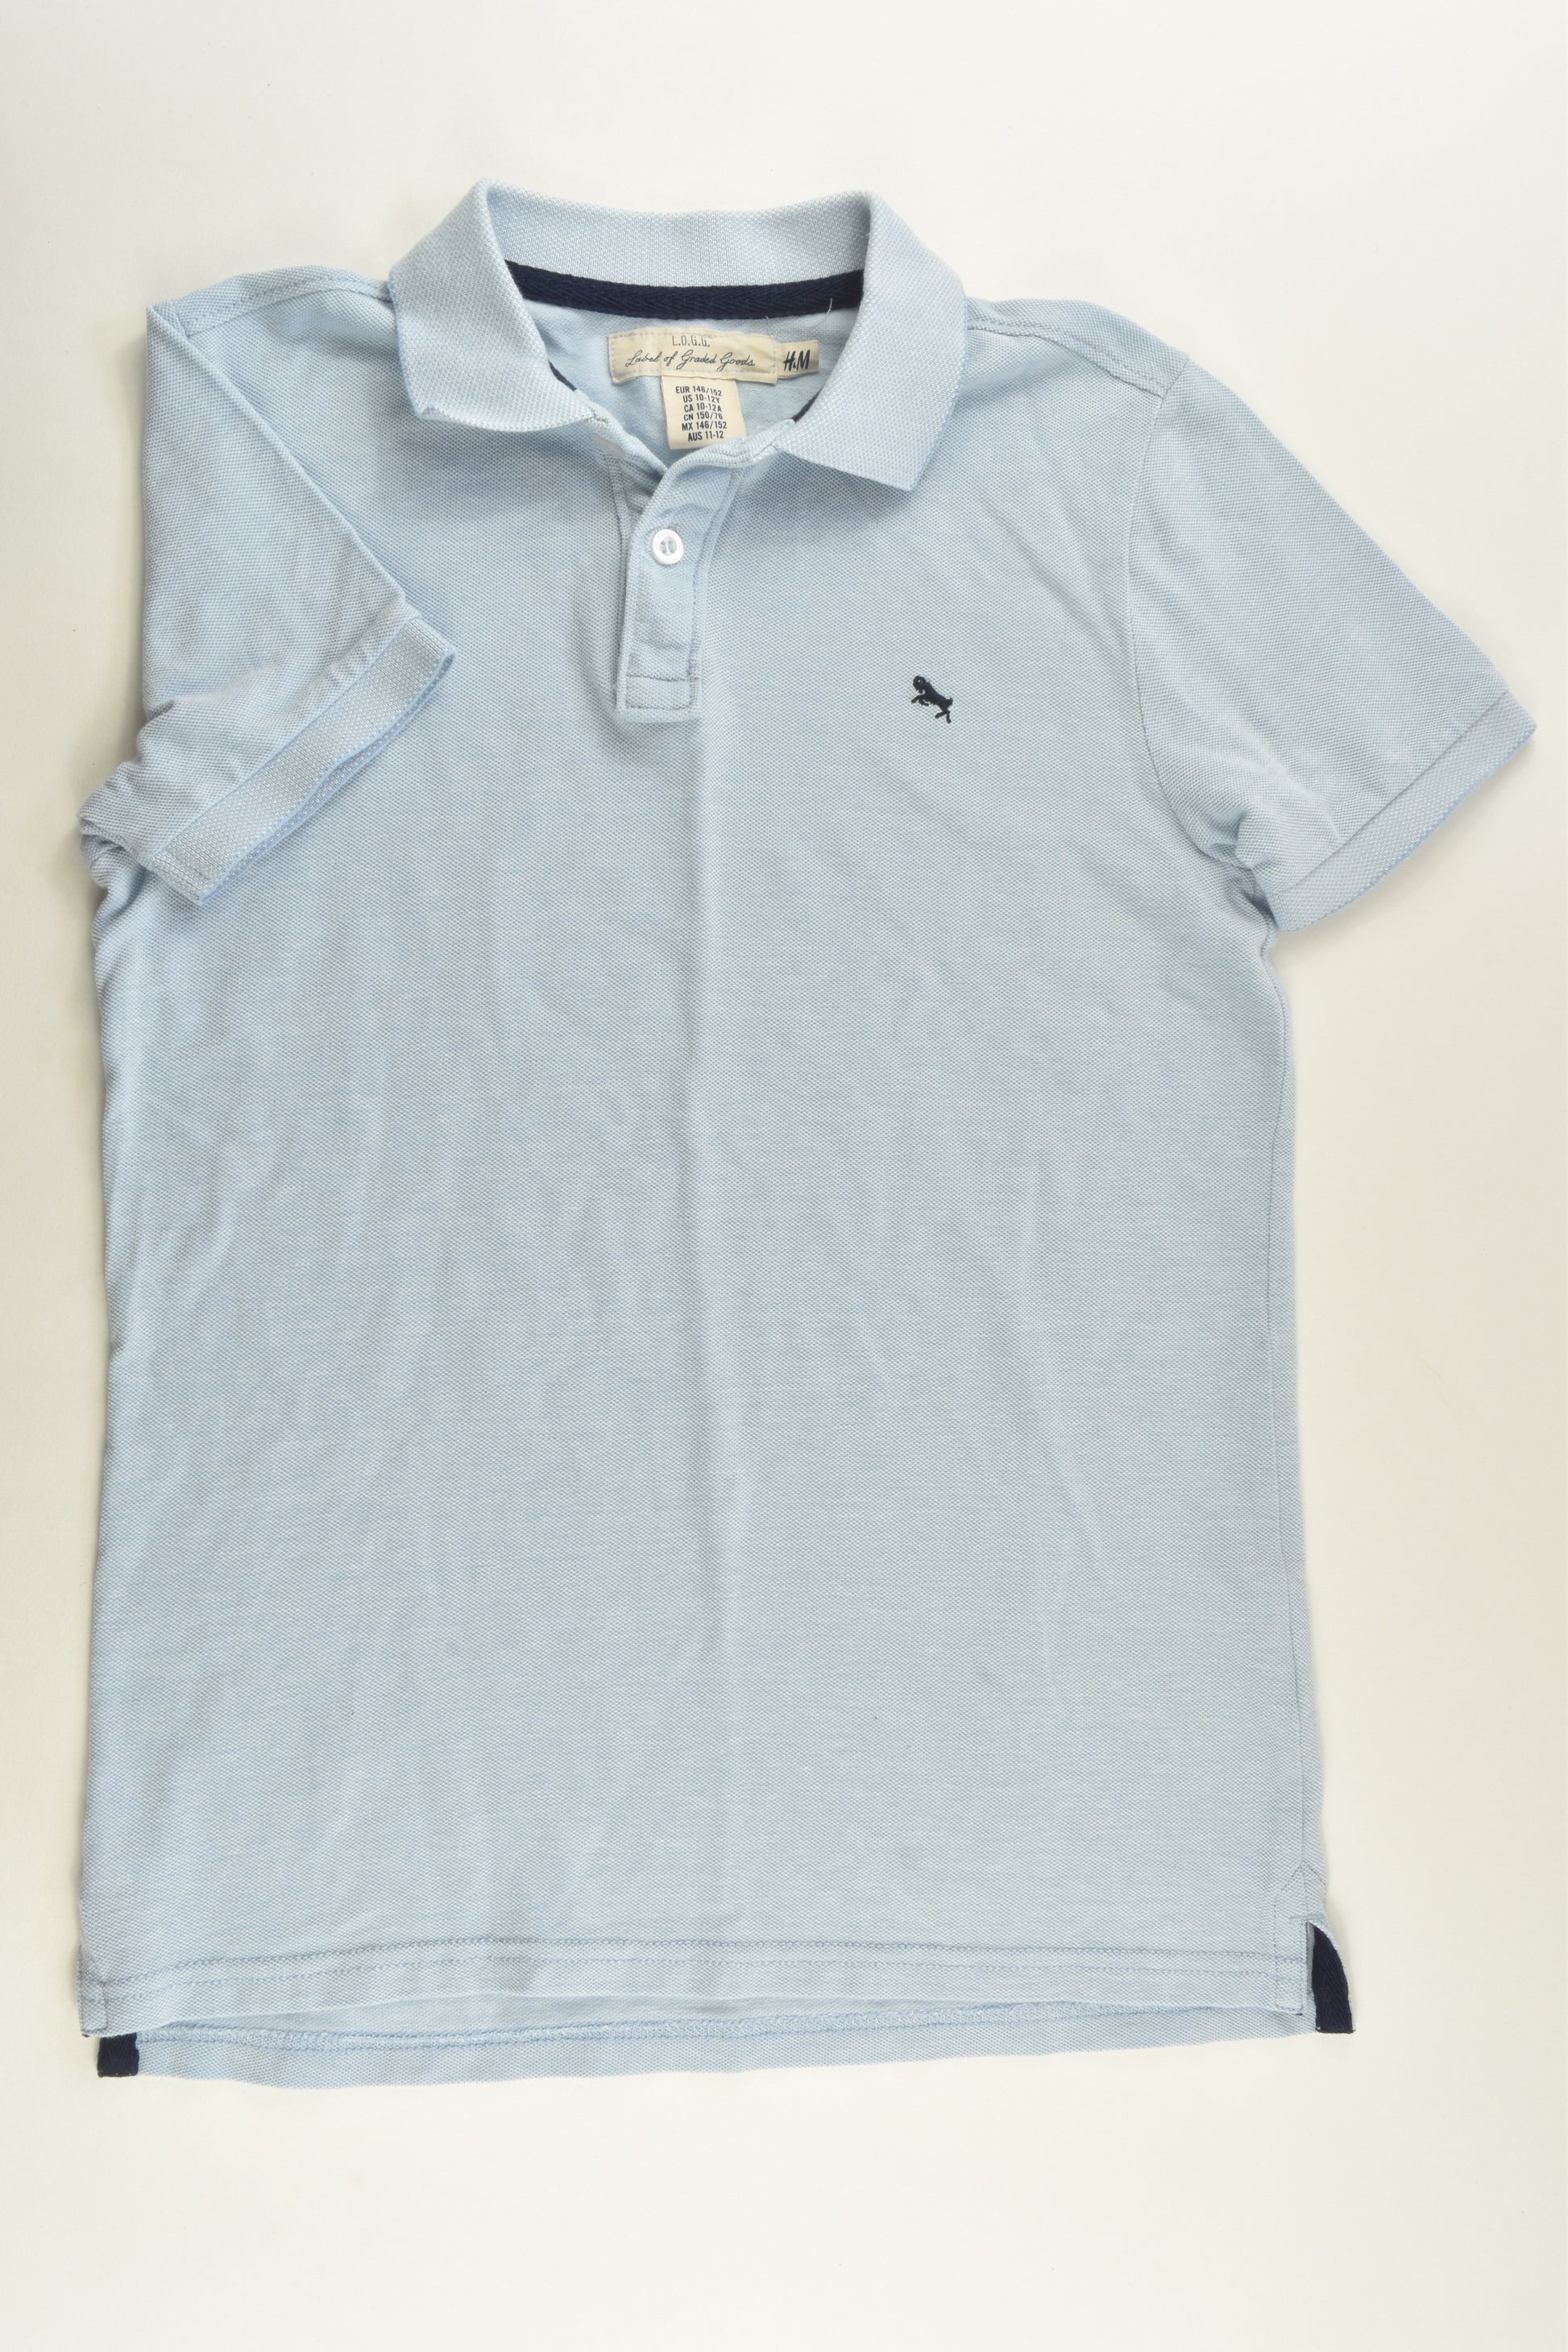 H&M Size 11-12 Polo Shirt